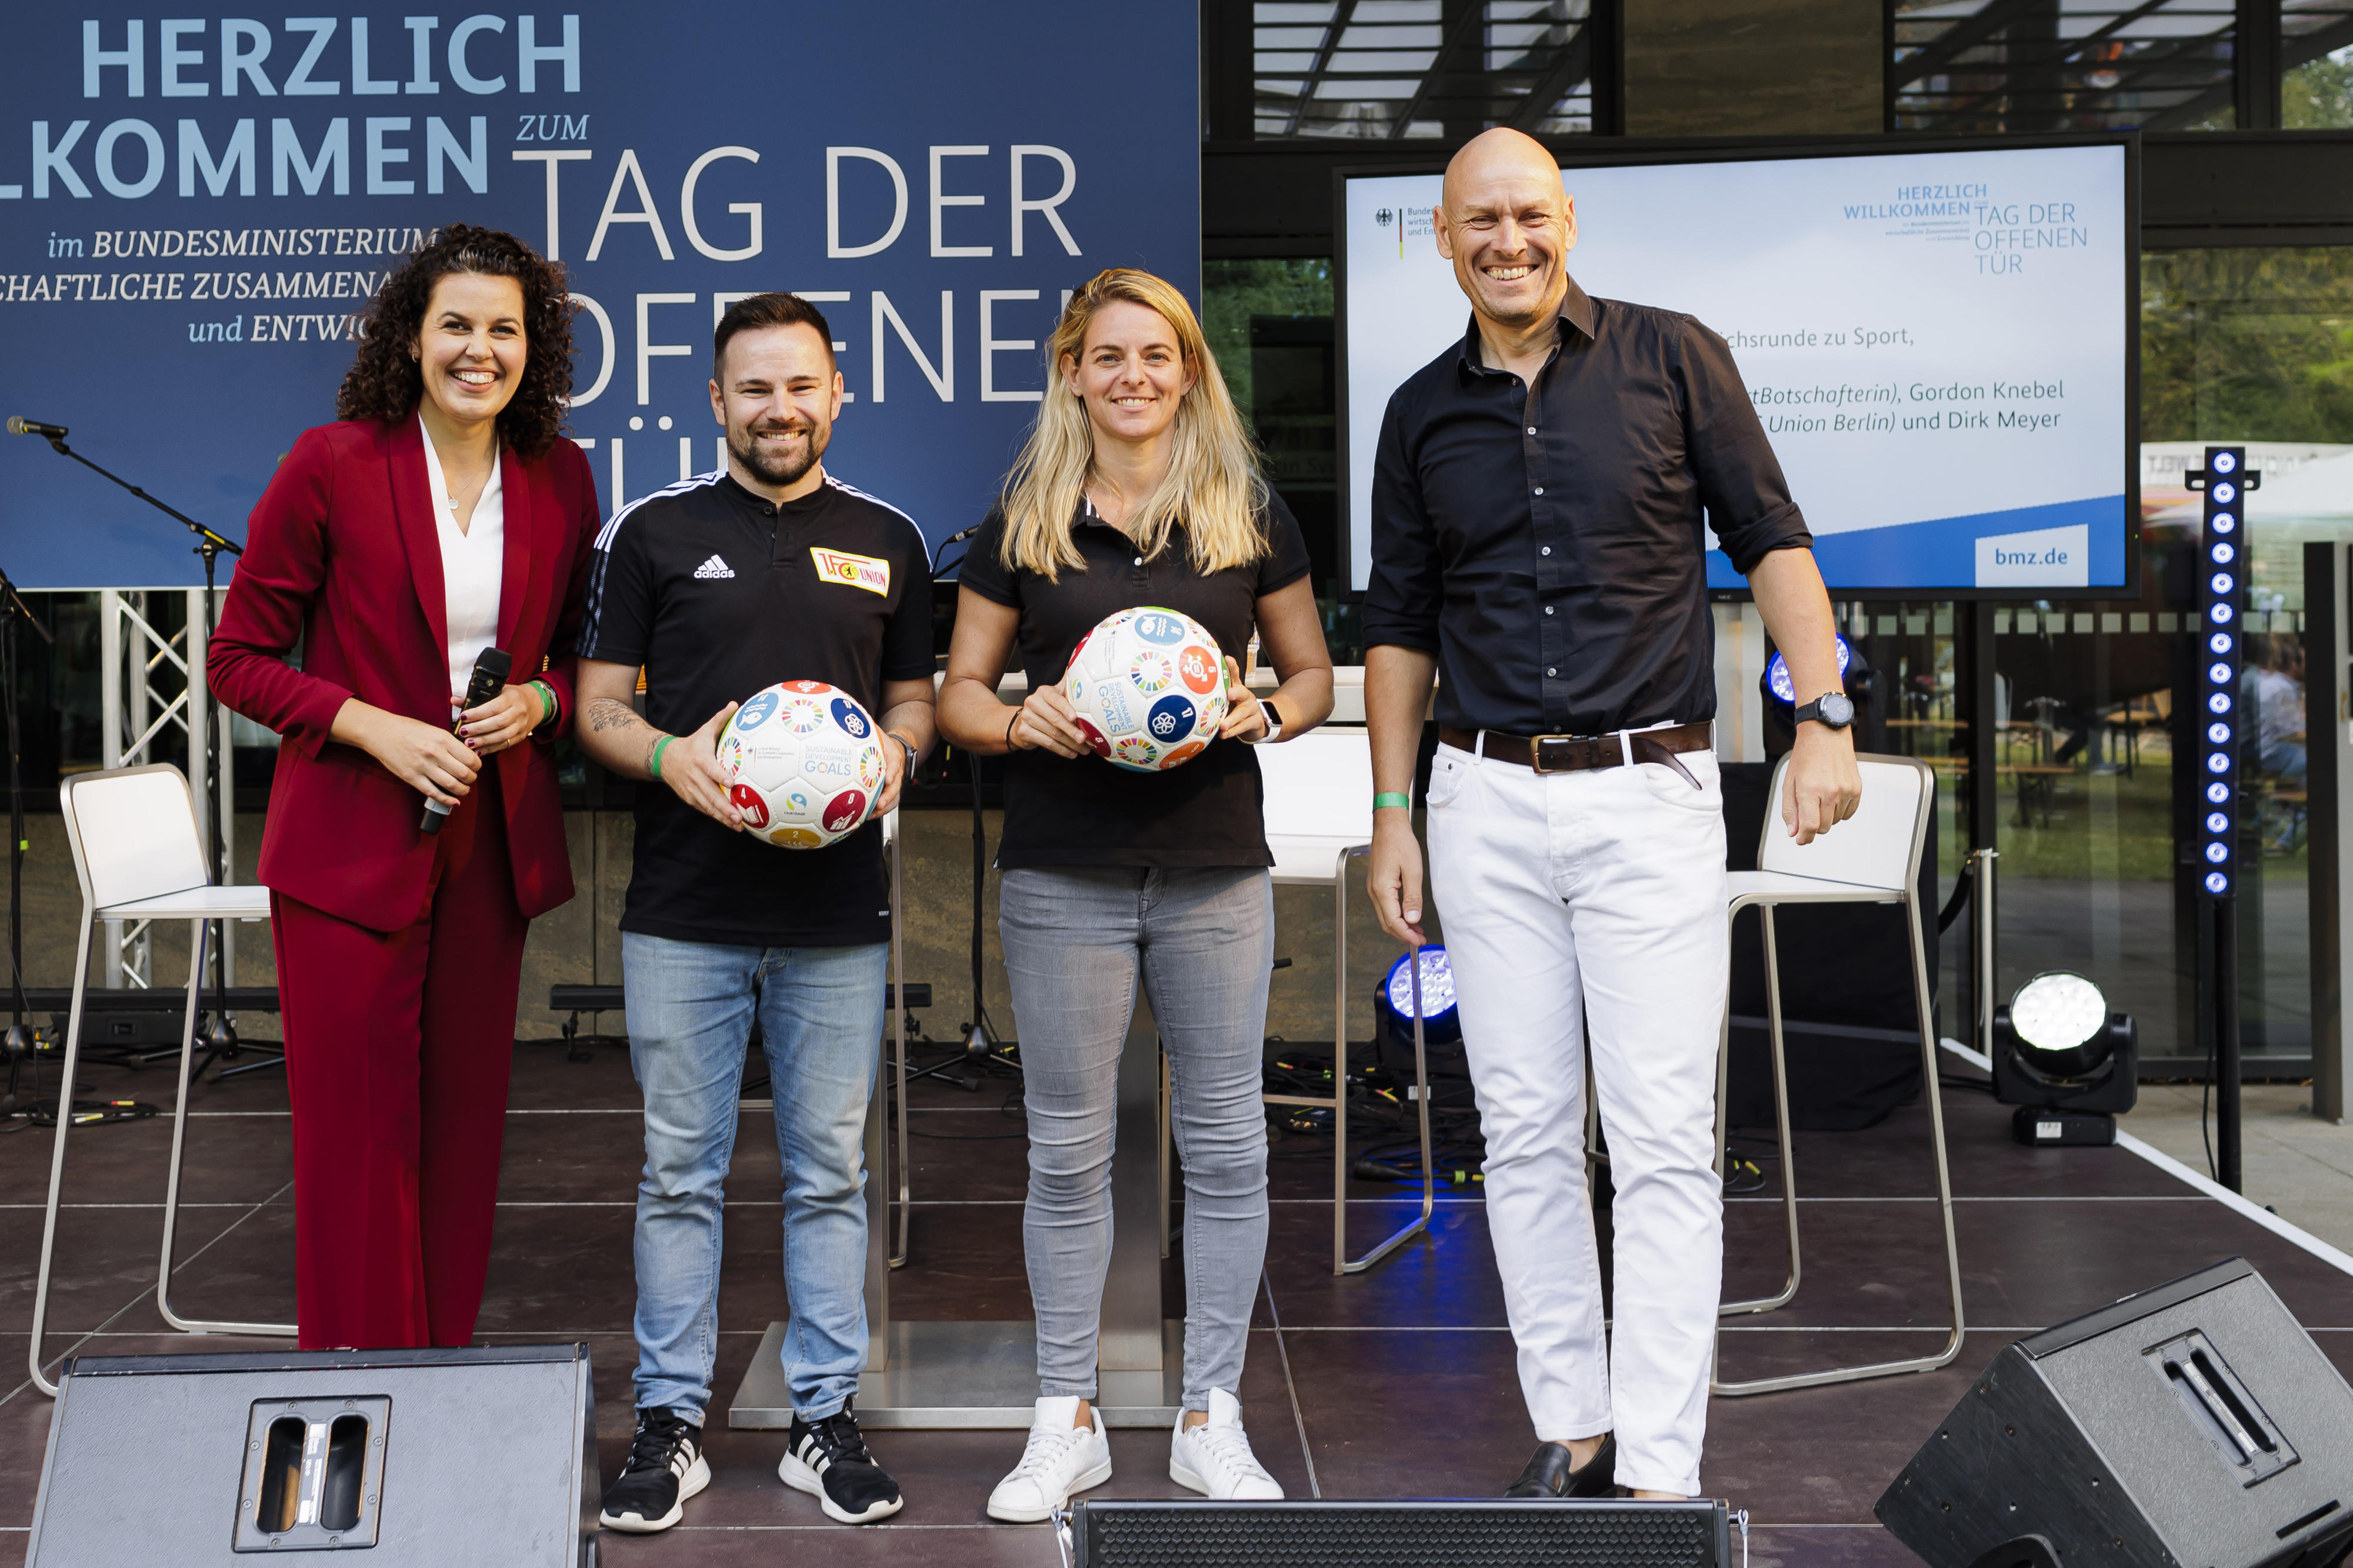 Das BMZ, Nia Künzer und der 1. FC Union Berlin setzen sich für die SDGs in Deutschland und Entwicklungs- und Schwellenländern ein – zum Beispiel mit nachhaltigen Trikots in den Fanshops, nachhaltigen Fußbällen und Förderung von Frauen und Mädchen durch Fußball und Sport.